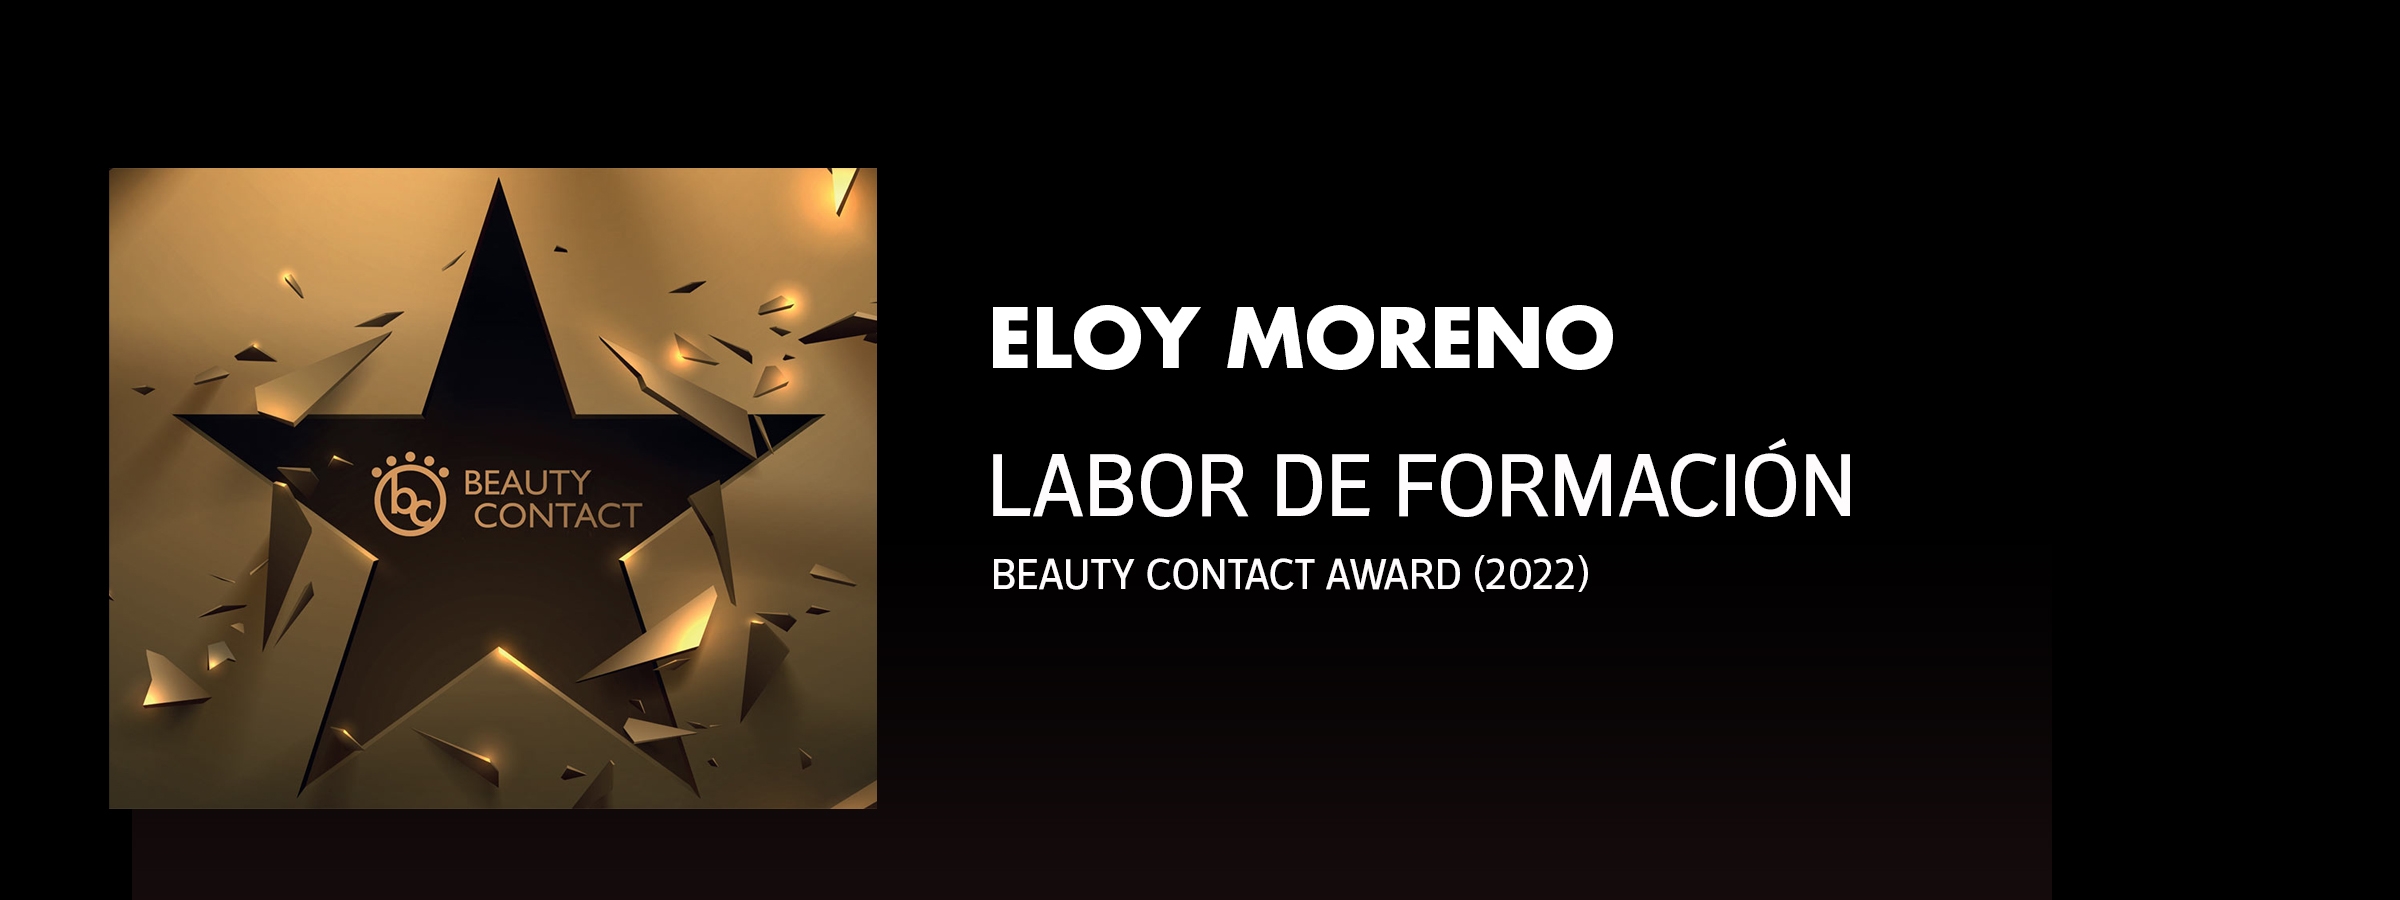 Eloy Moreno: Premio a la Labor de formación